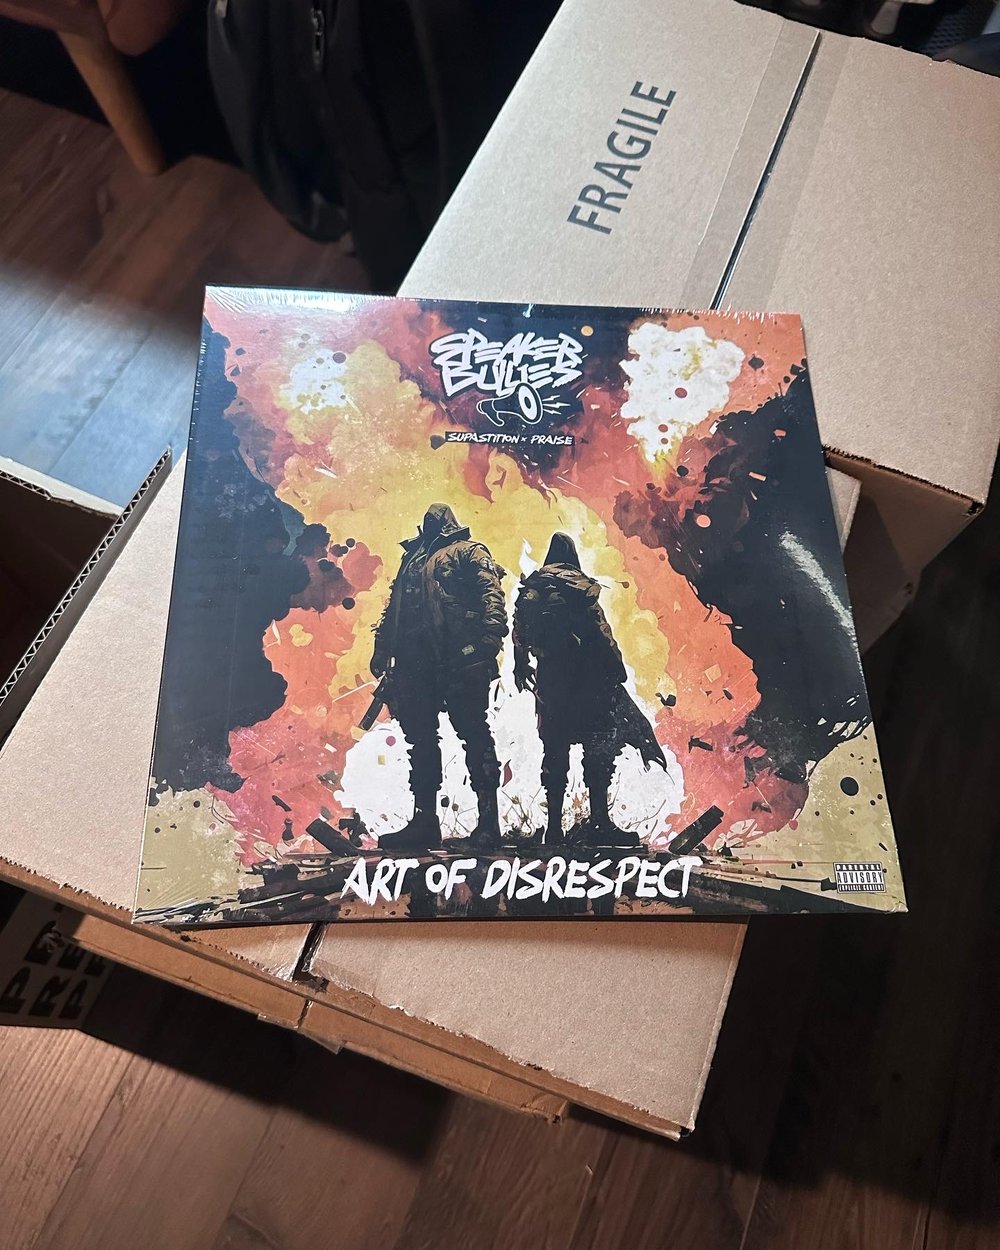 Speaker Bullies "Art Of Disrespect" Vinyl